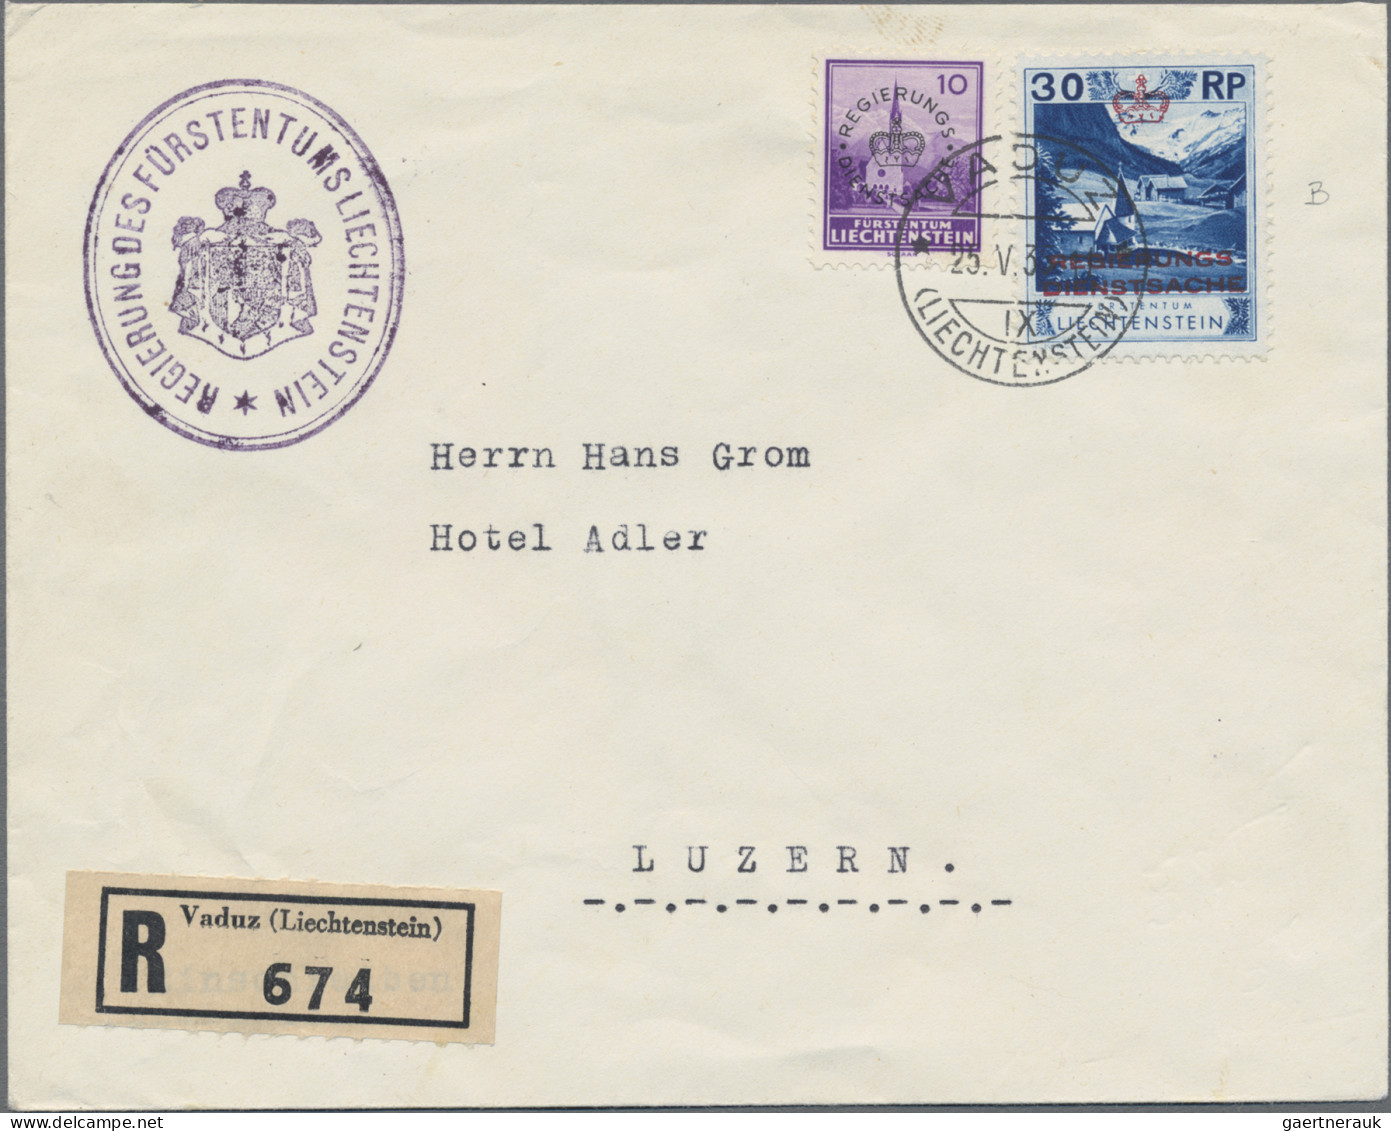 Liechtenstein - Dienstmarken: 1935/1936, 5 verschiedene R-Briefe der Regierung m